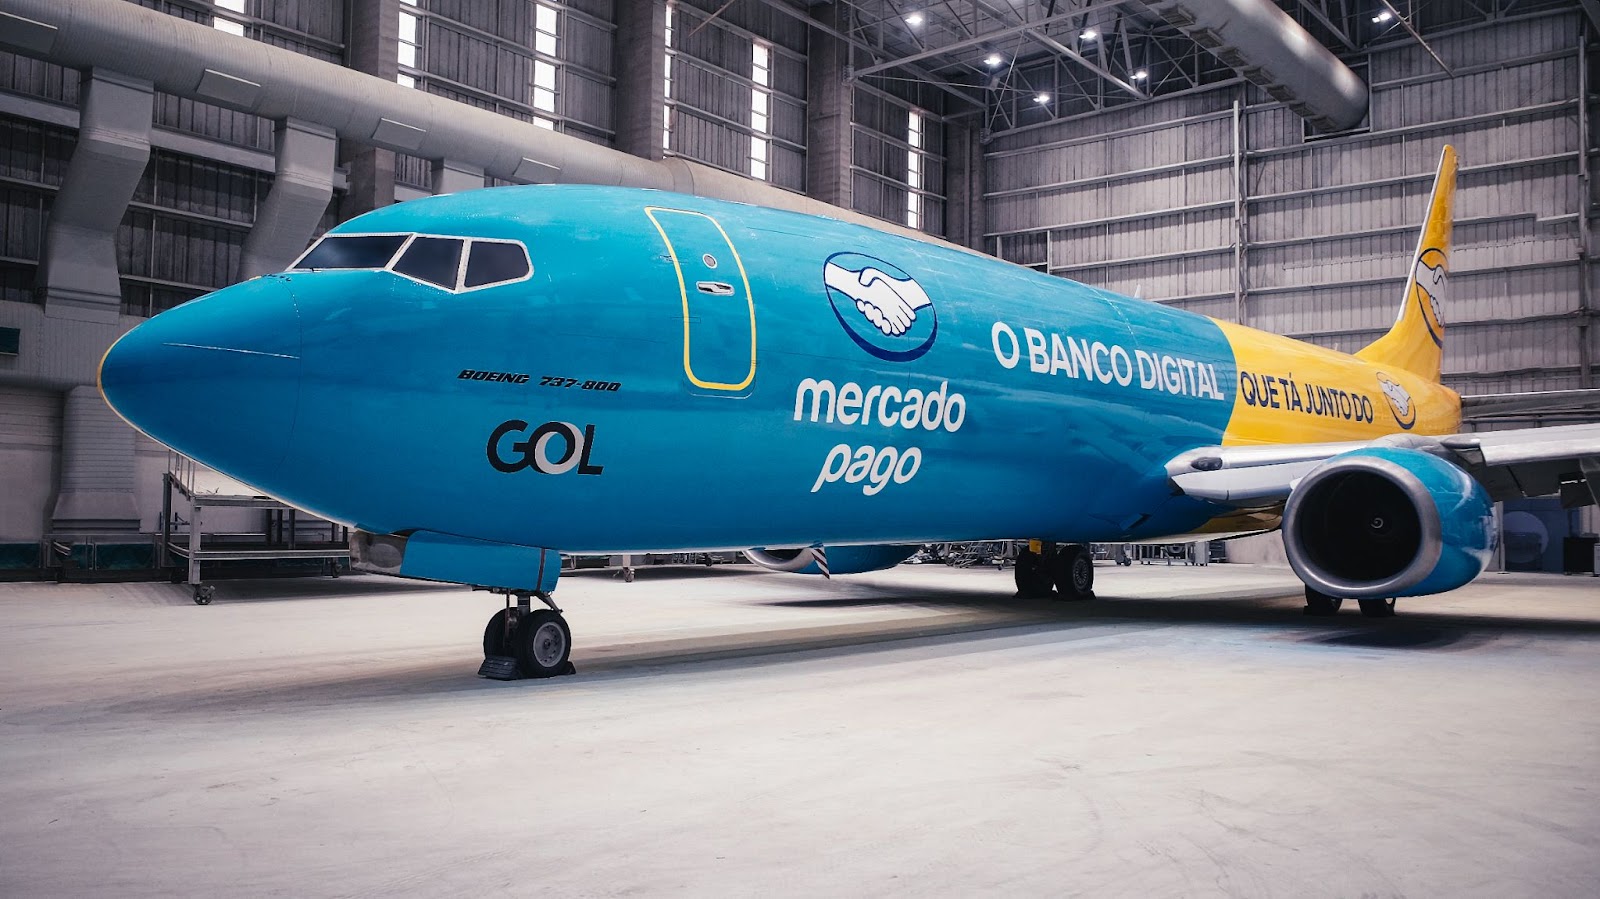 Quarto avião da frota do Mercado Livre, agora mais integrado ao Mercado Pago. Foto: Agência MOL/Giancarlo Mazzeo